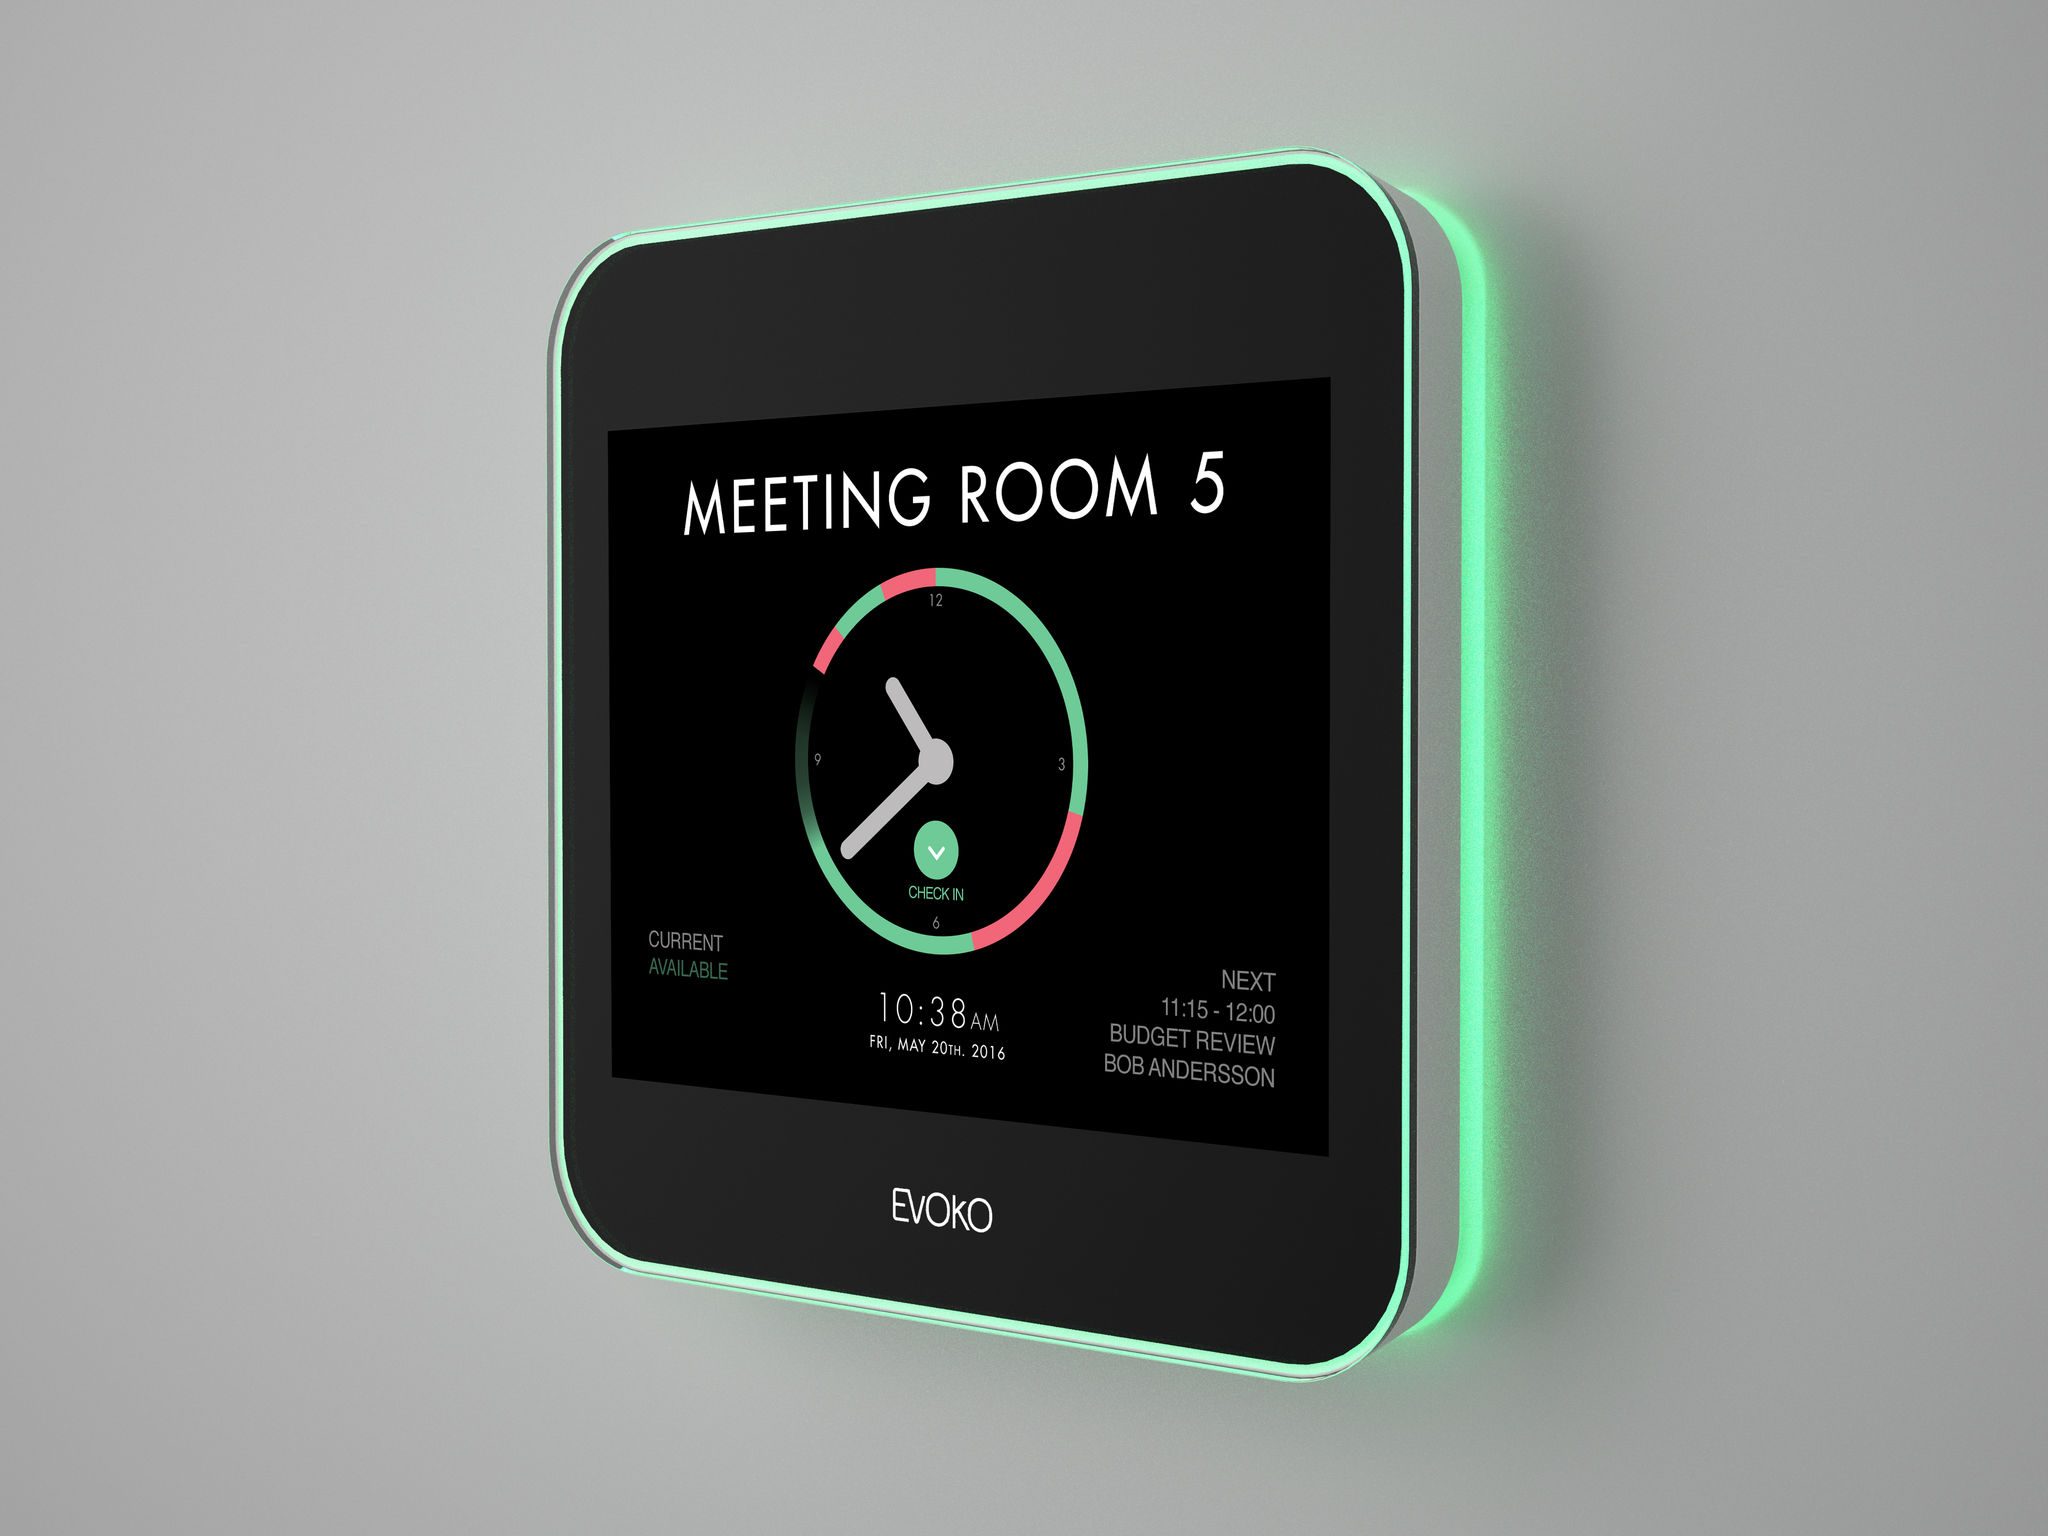 MEETING ROOM SCHEDULER - Evoko meeting room booking UAE and meeting room scheduler UAE